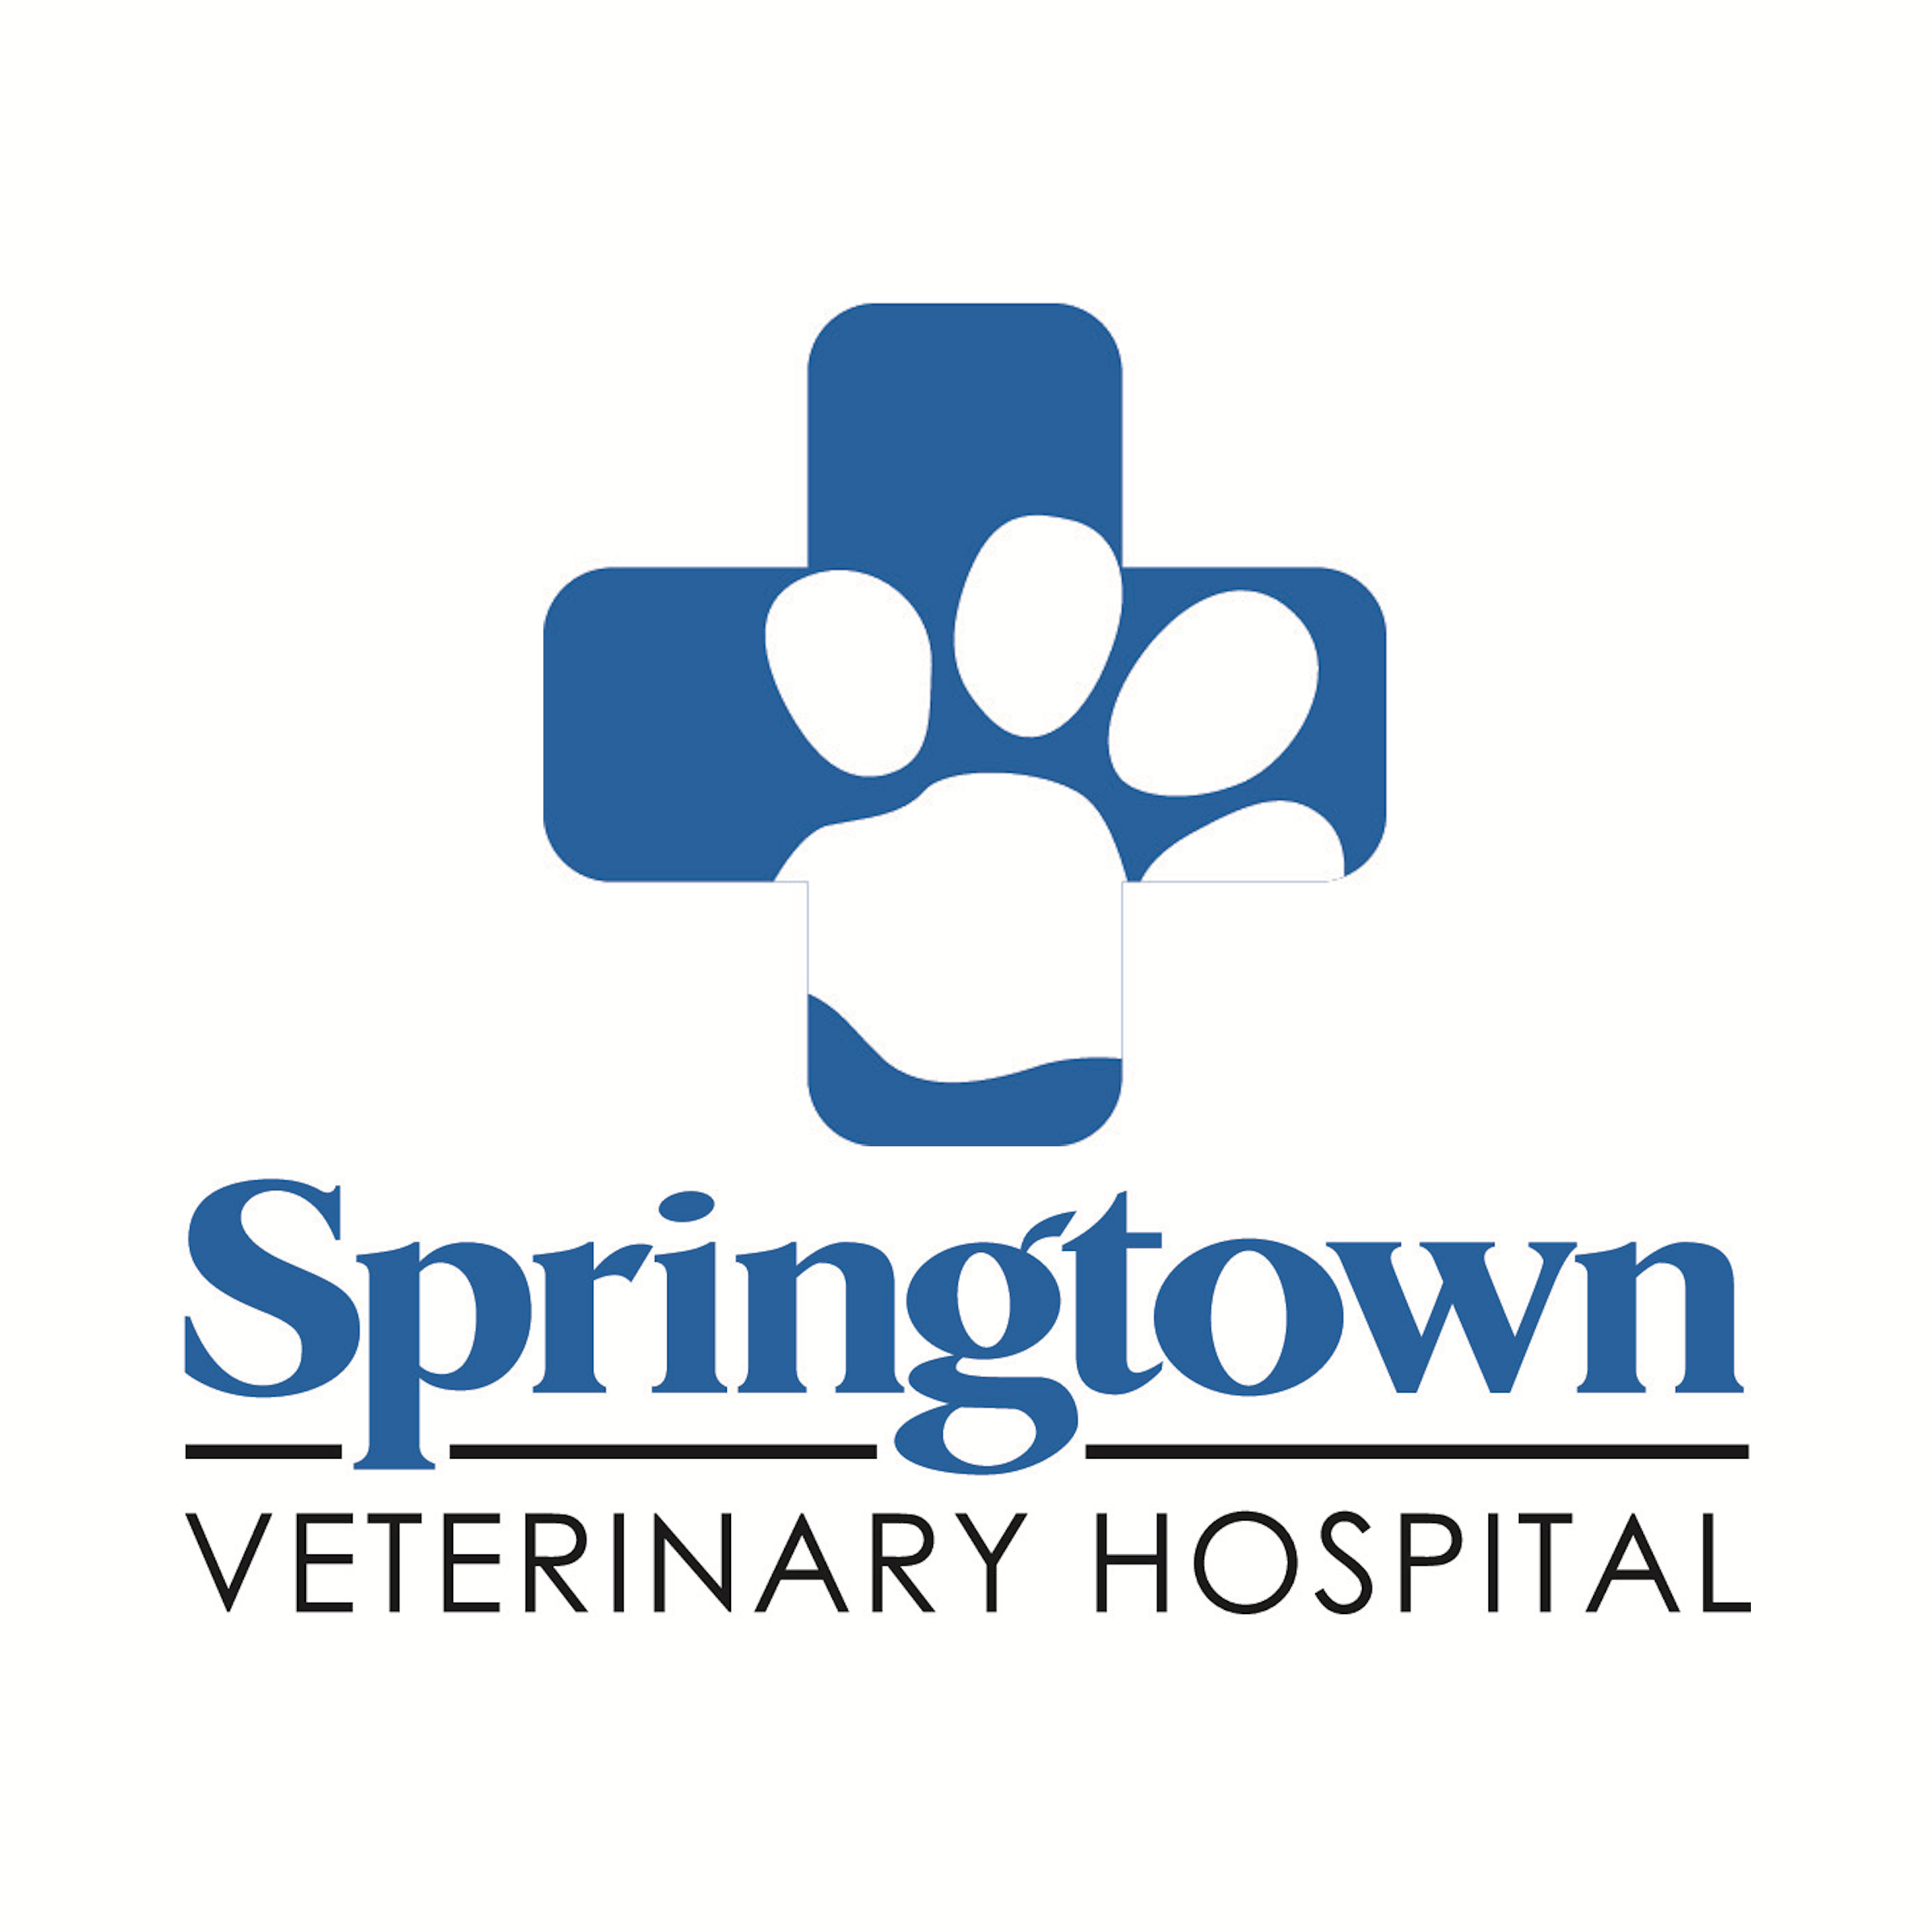 Springtown Veterinary Hospital